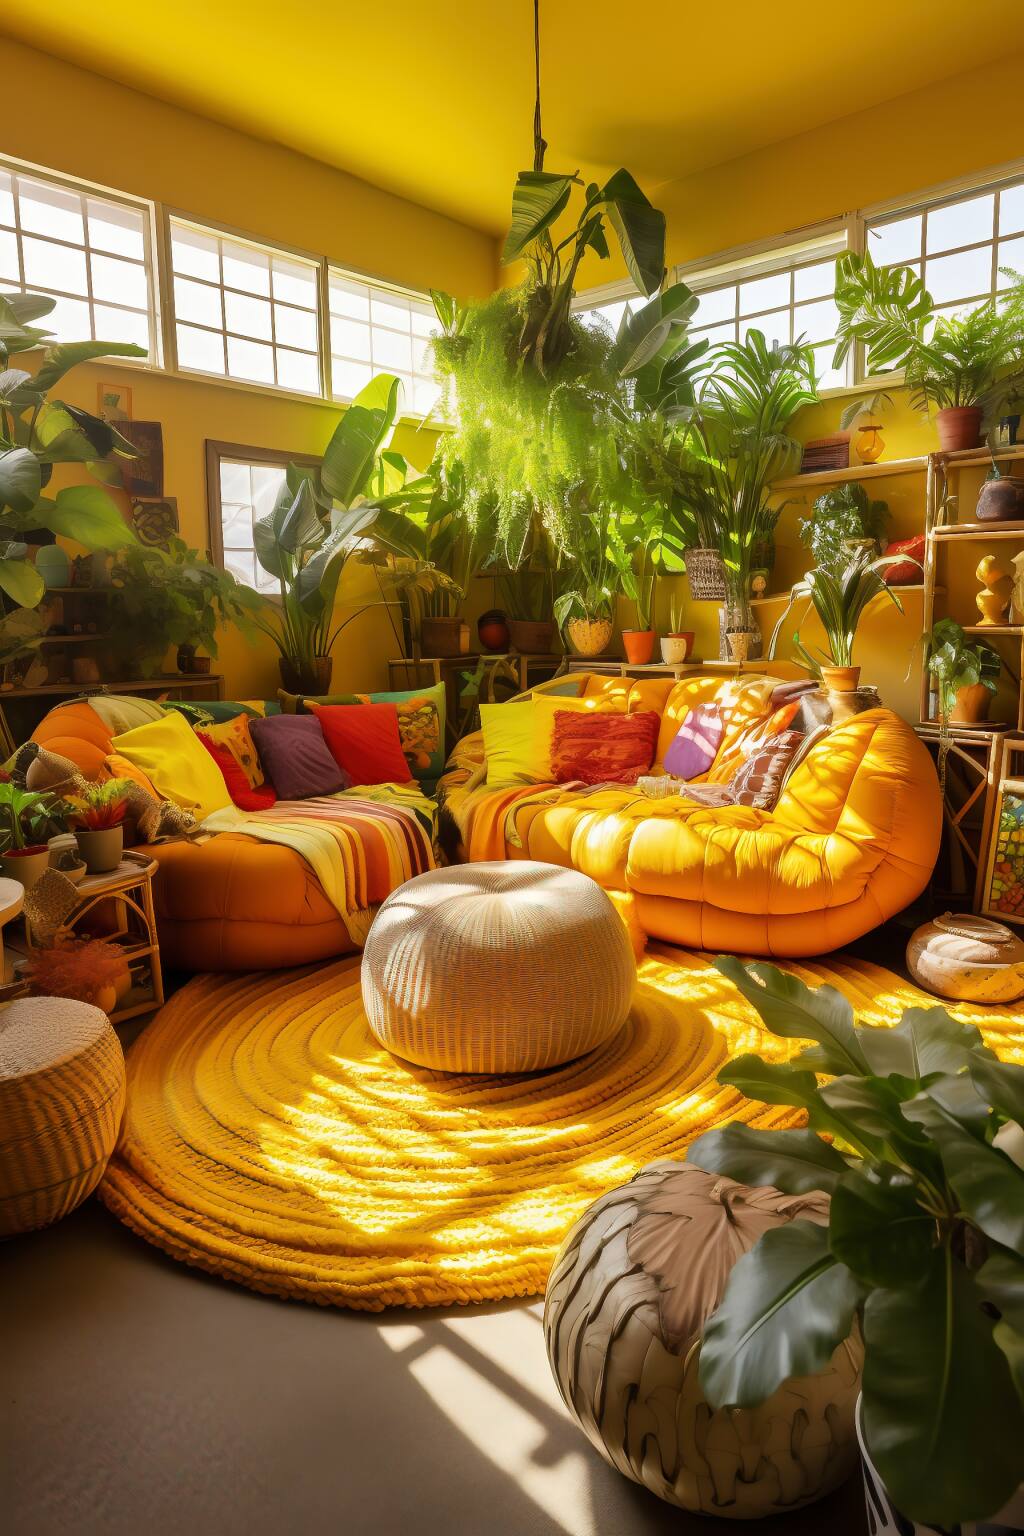 Tropisches Bohème-Wohnzimmer In Grün Und Gelb, Mit Bambusmöbeln, Kissen Mit Blattdruck Und Hängenden Farnen.